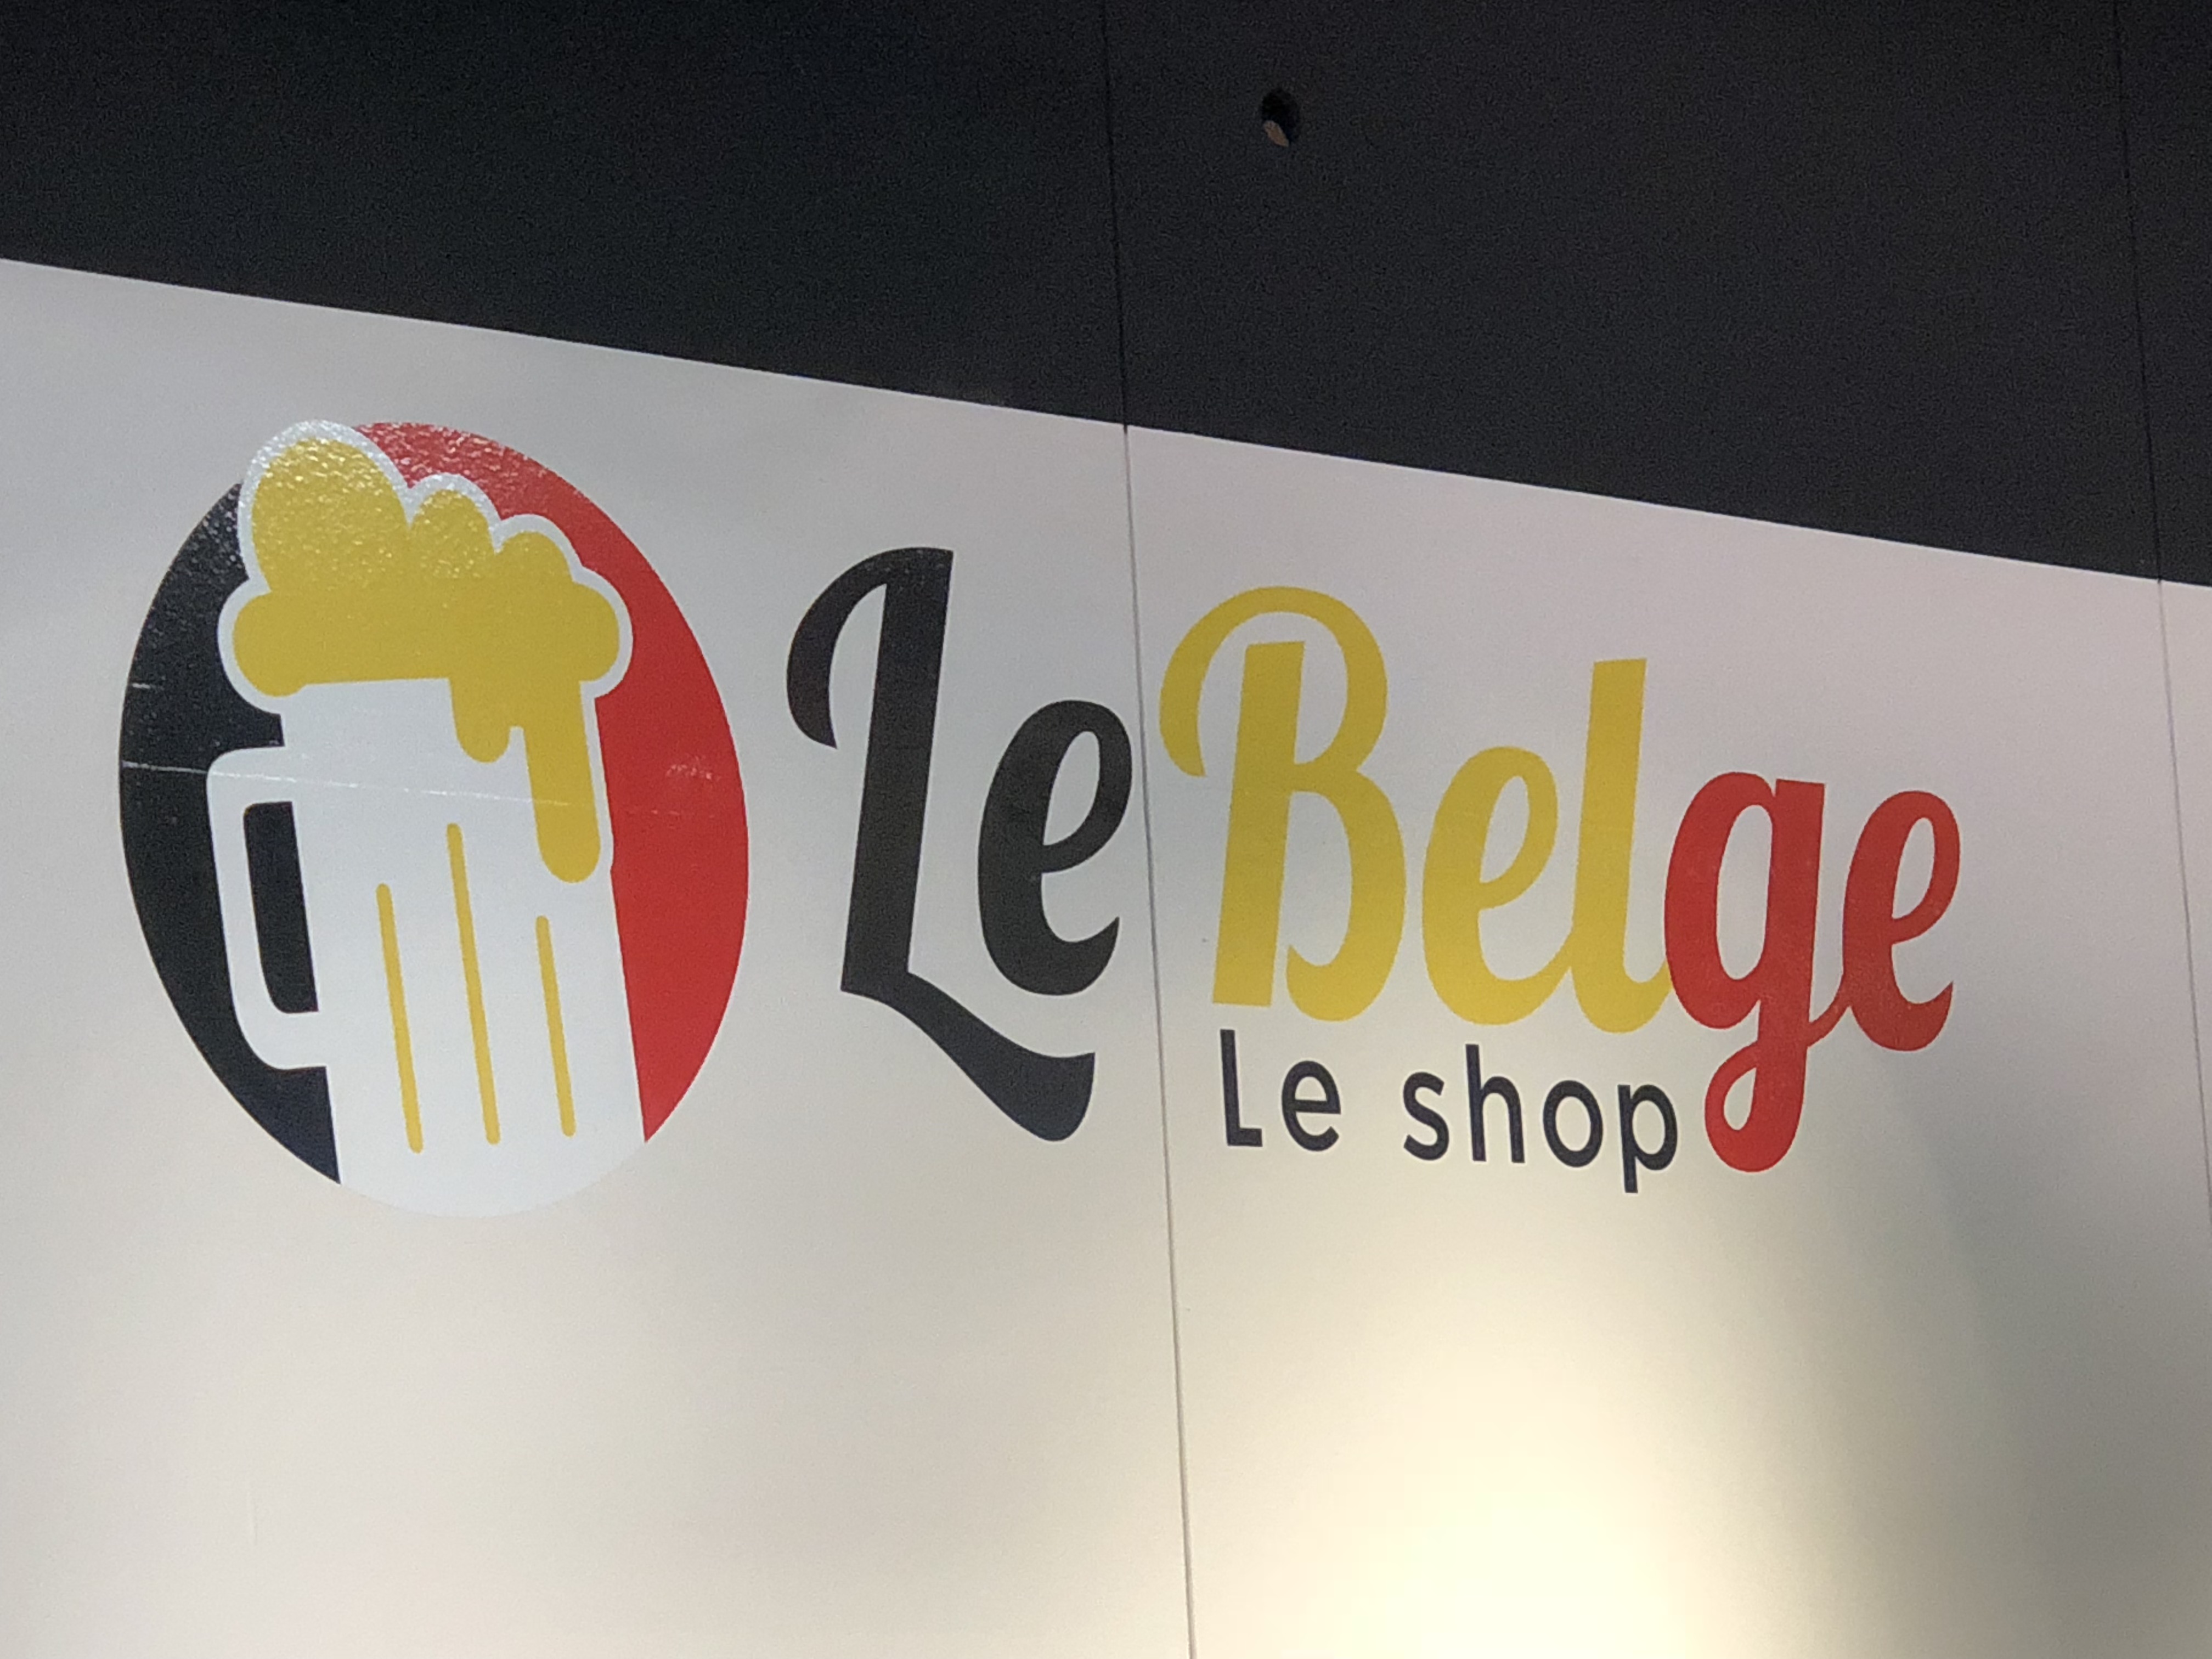 Le Shop Le Belge